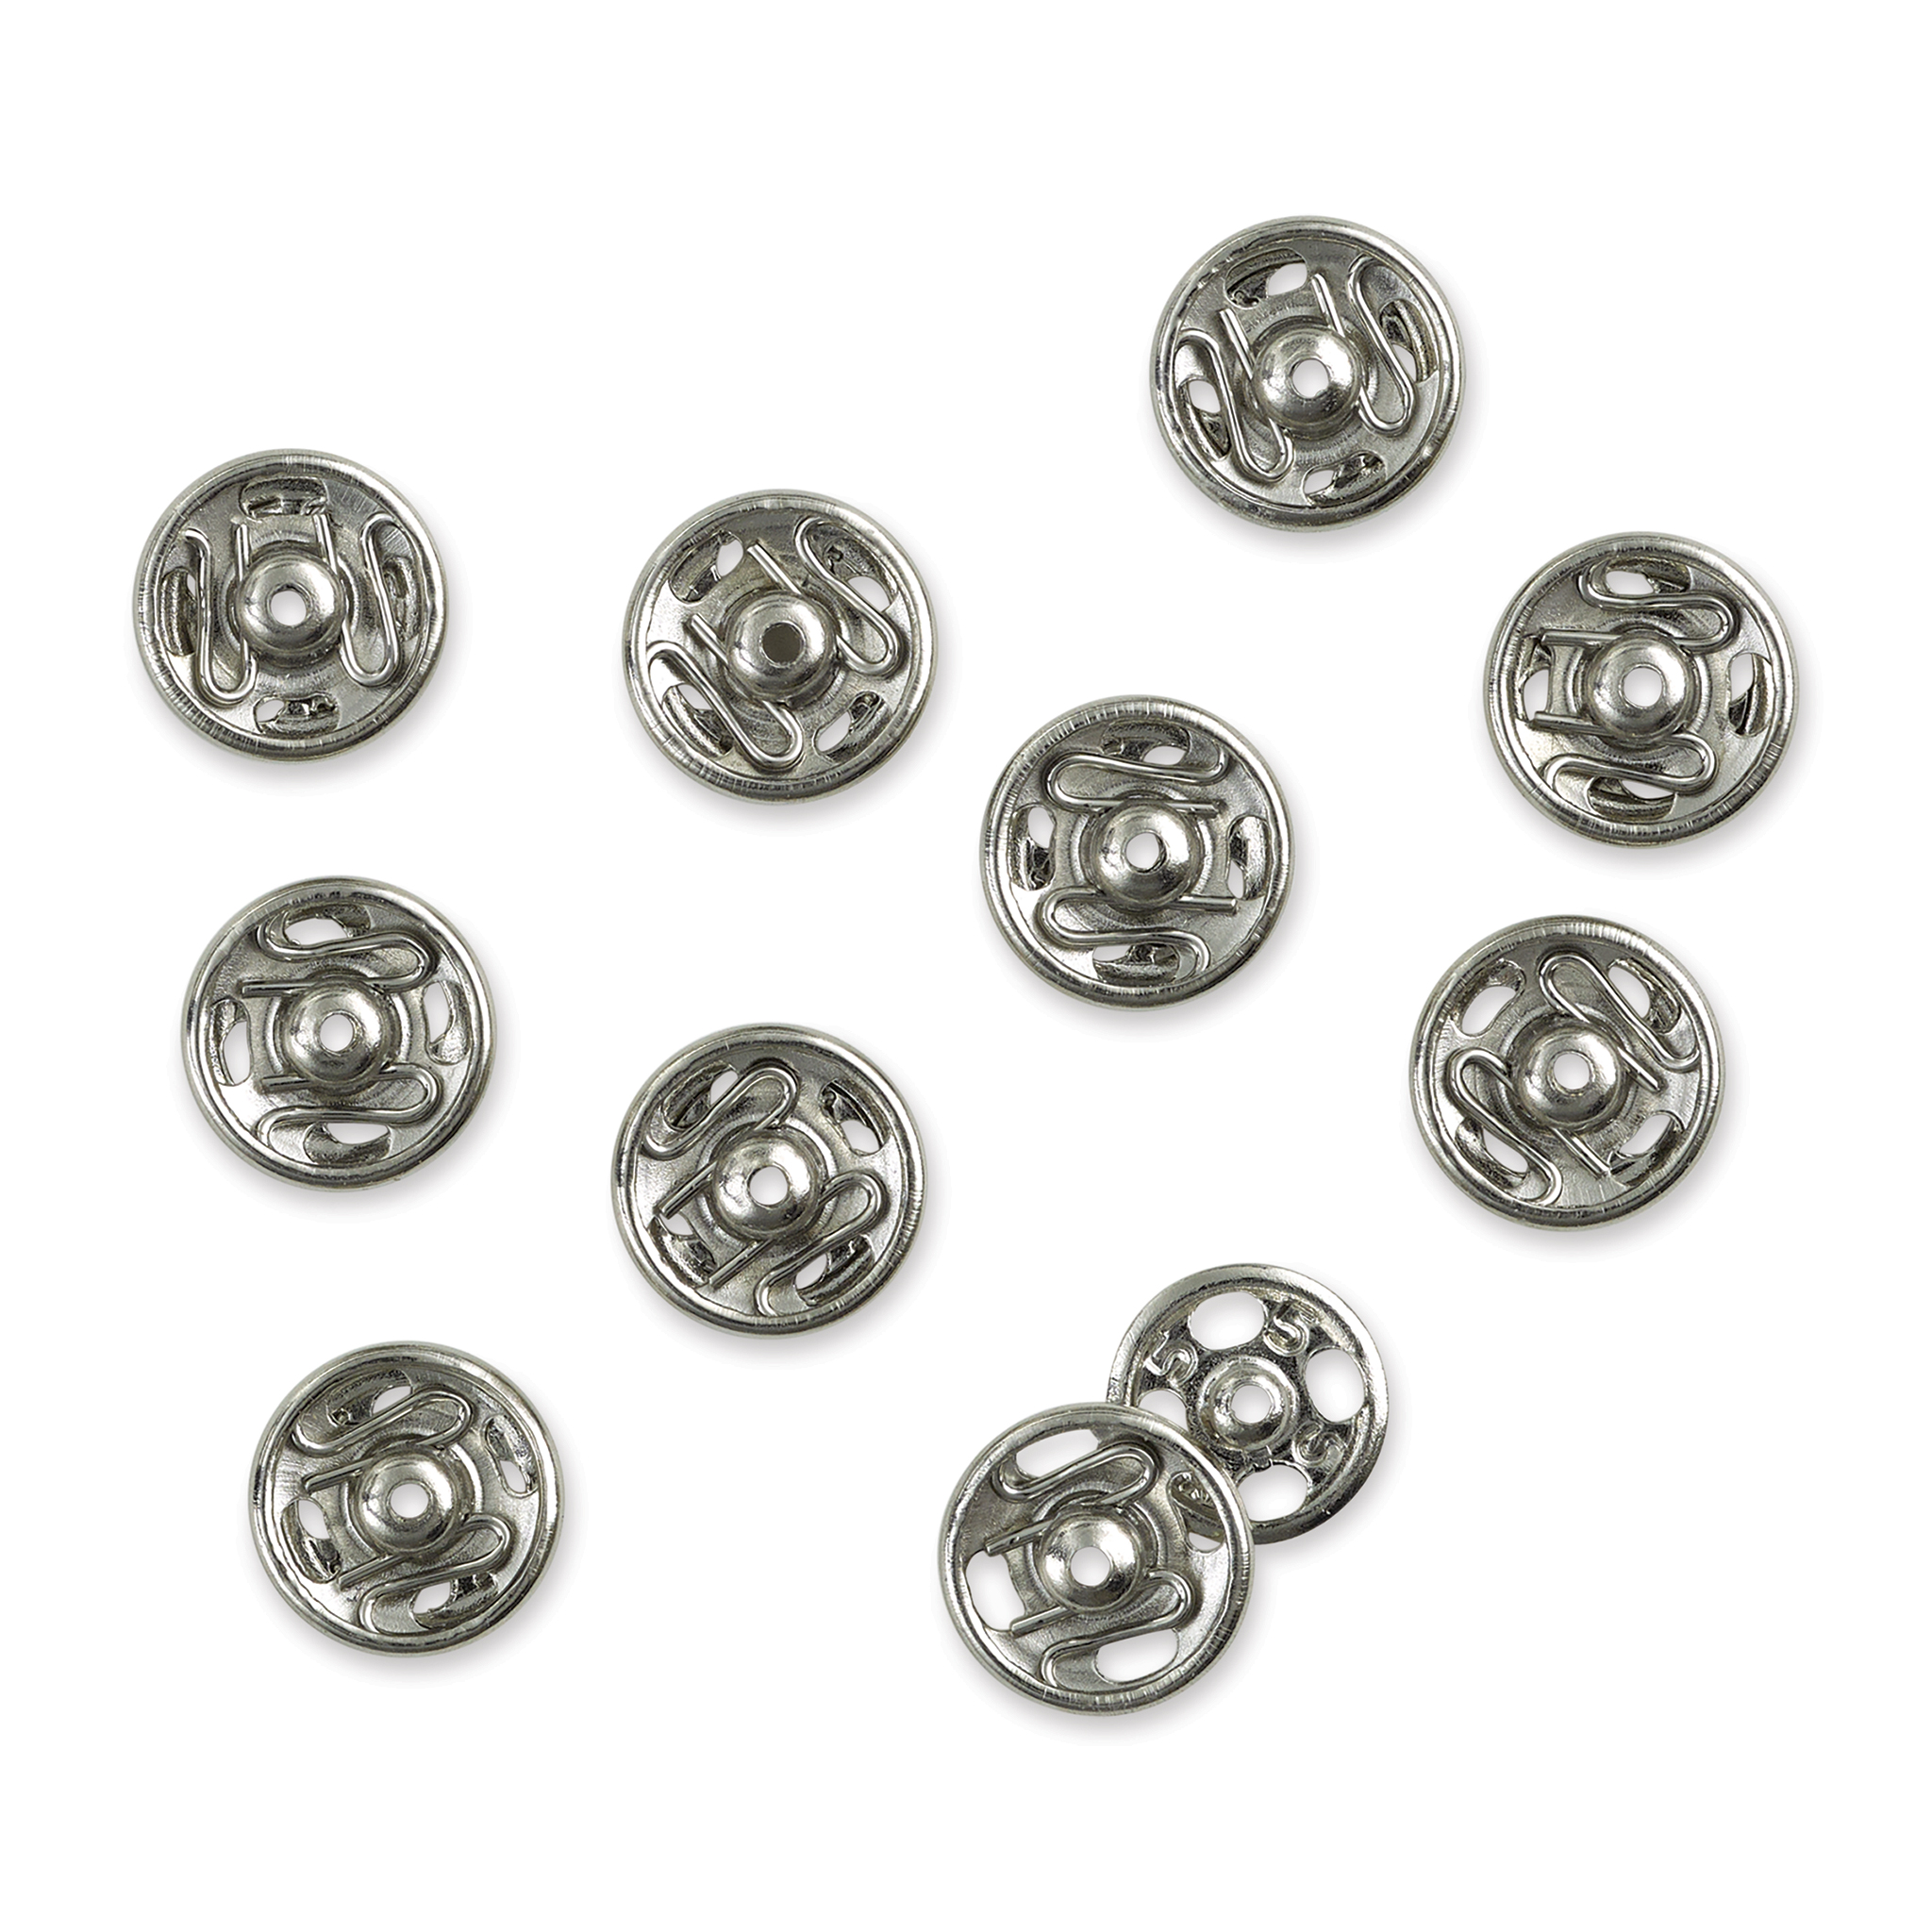 Dritz Sew-on Snaps - Nickel 10pc sizes 2/0 - Stonemountain